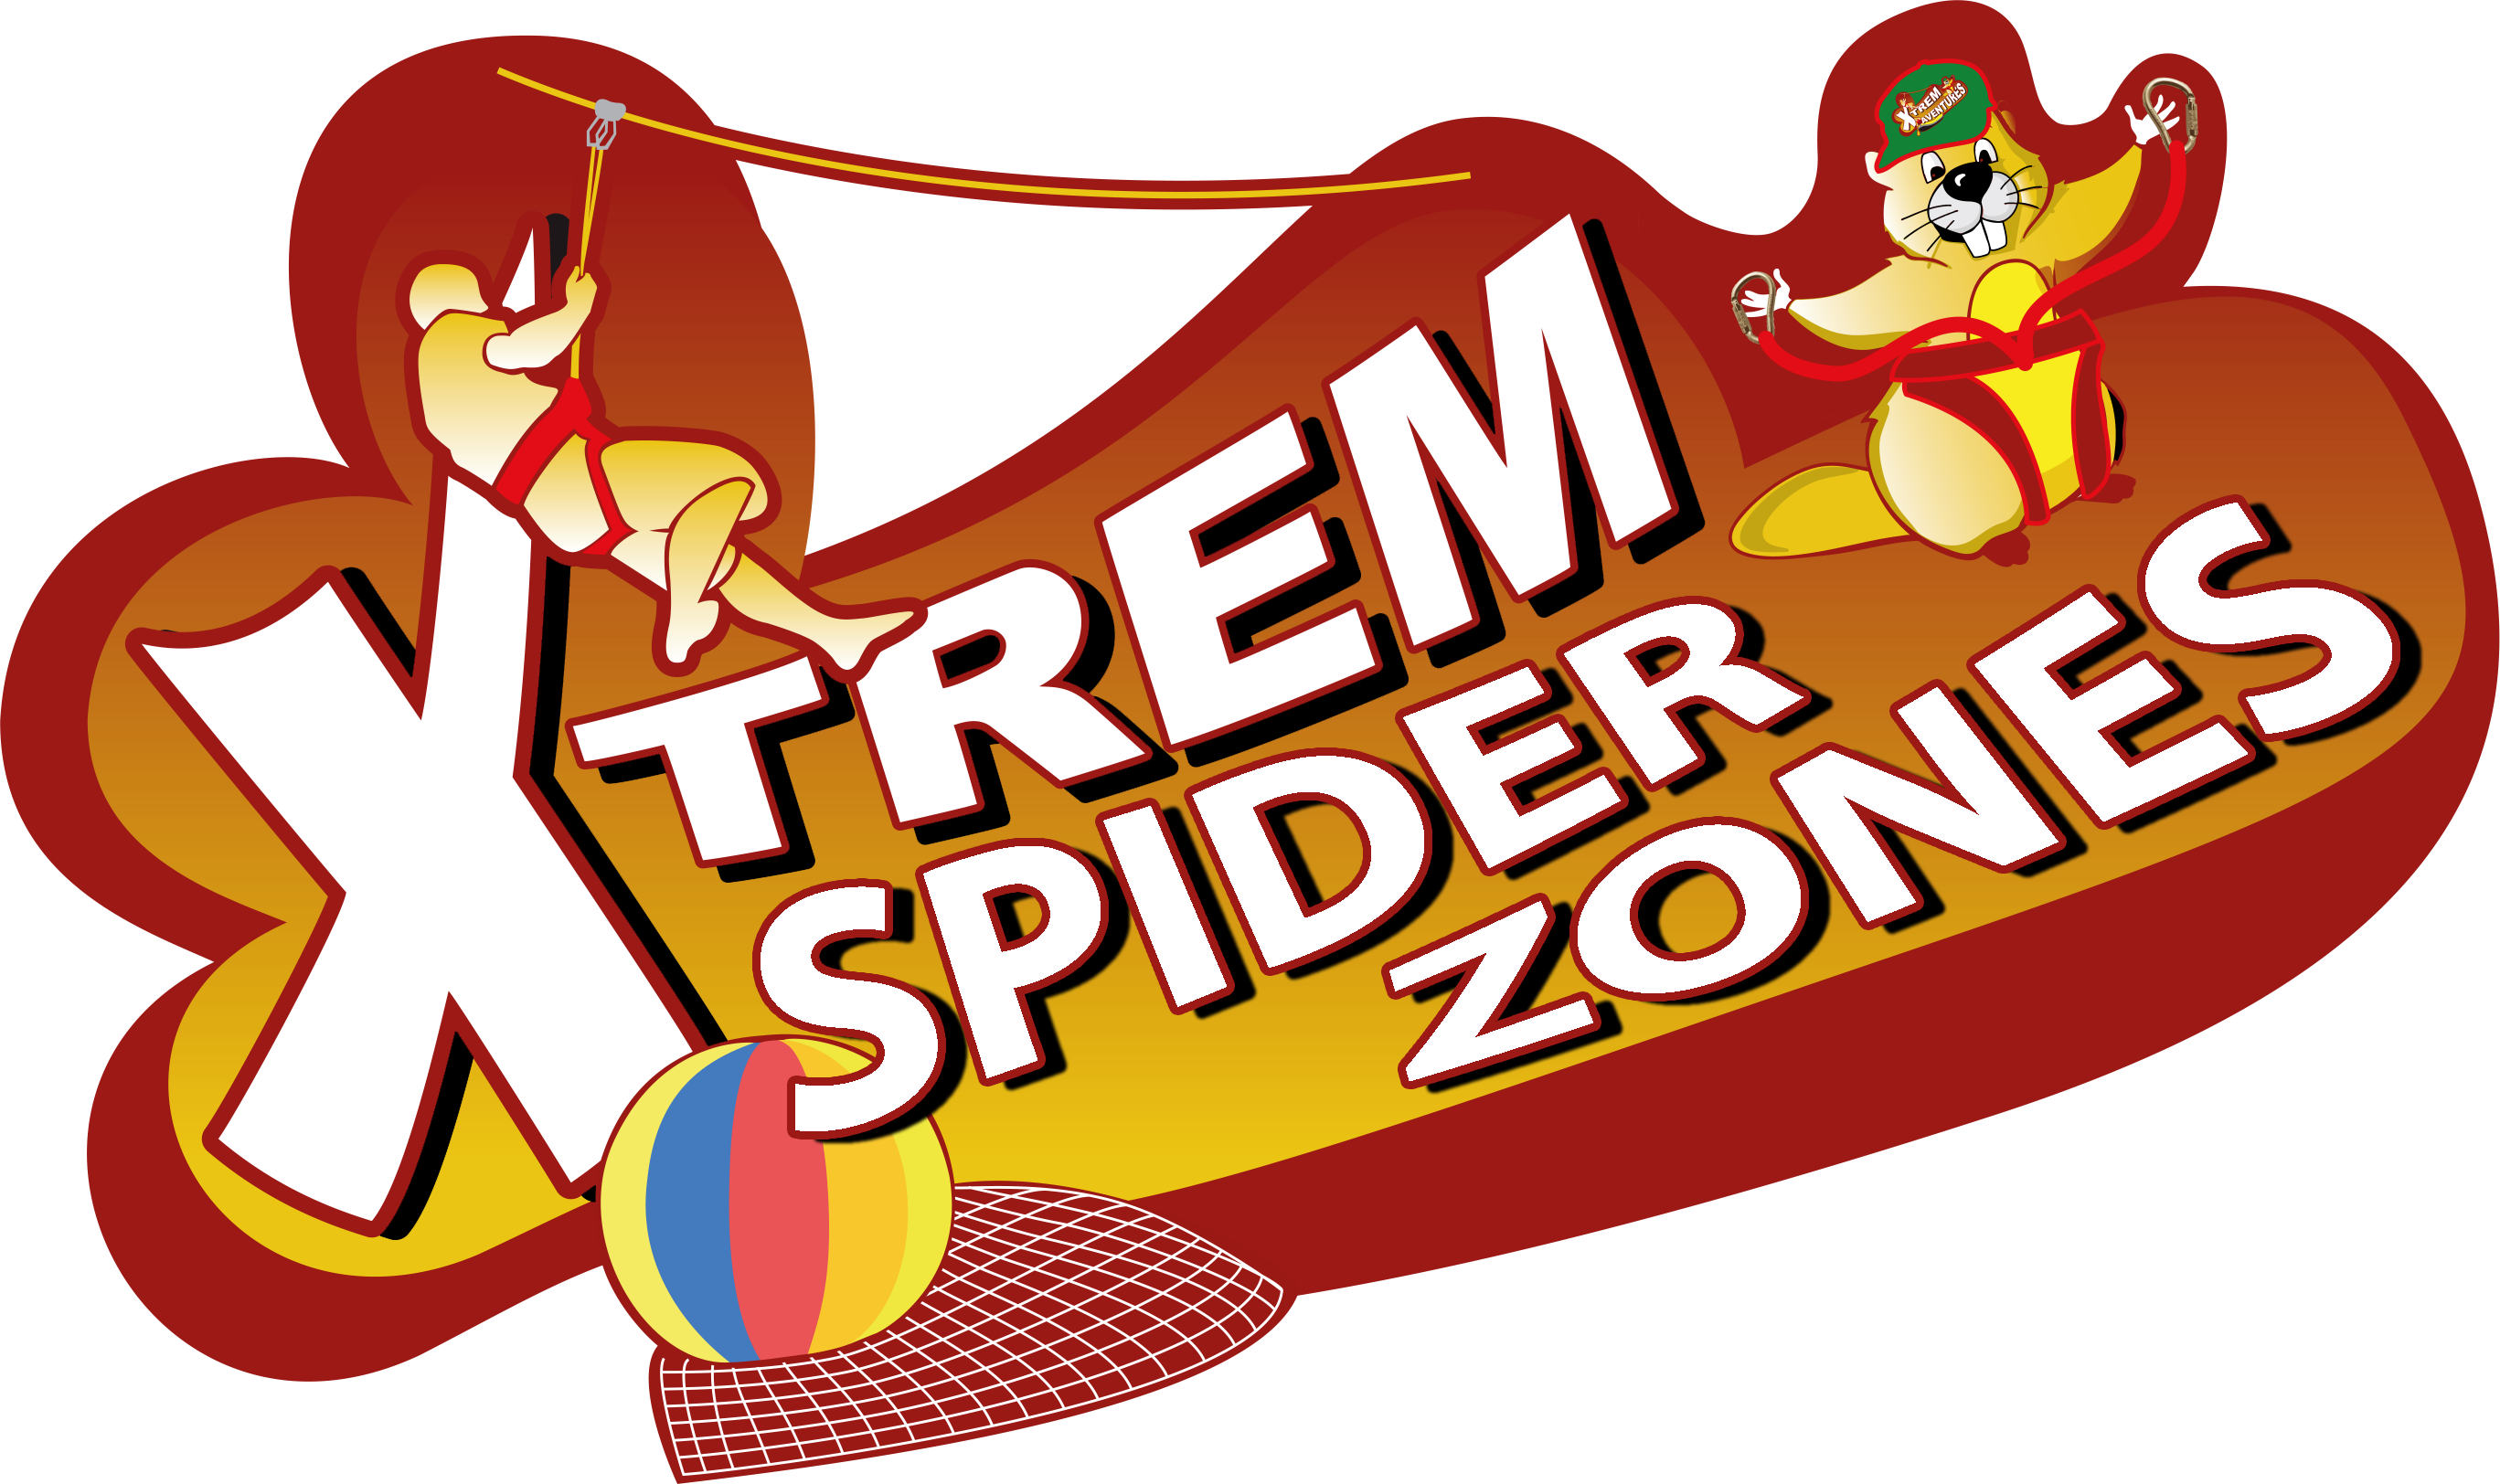 Xtrem Spider Zones